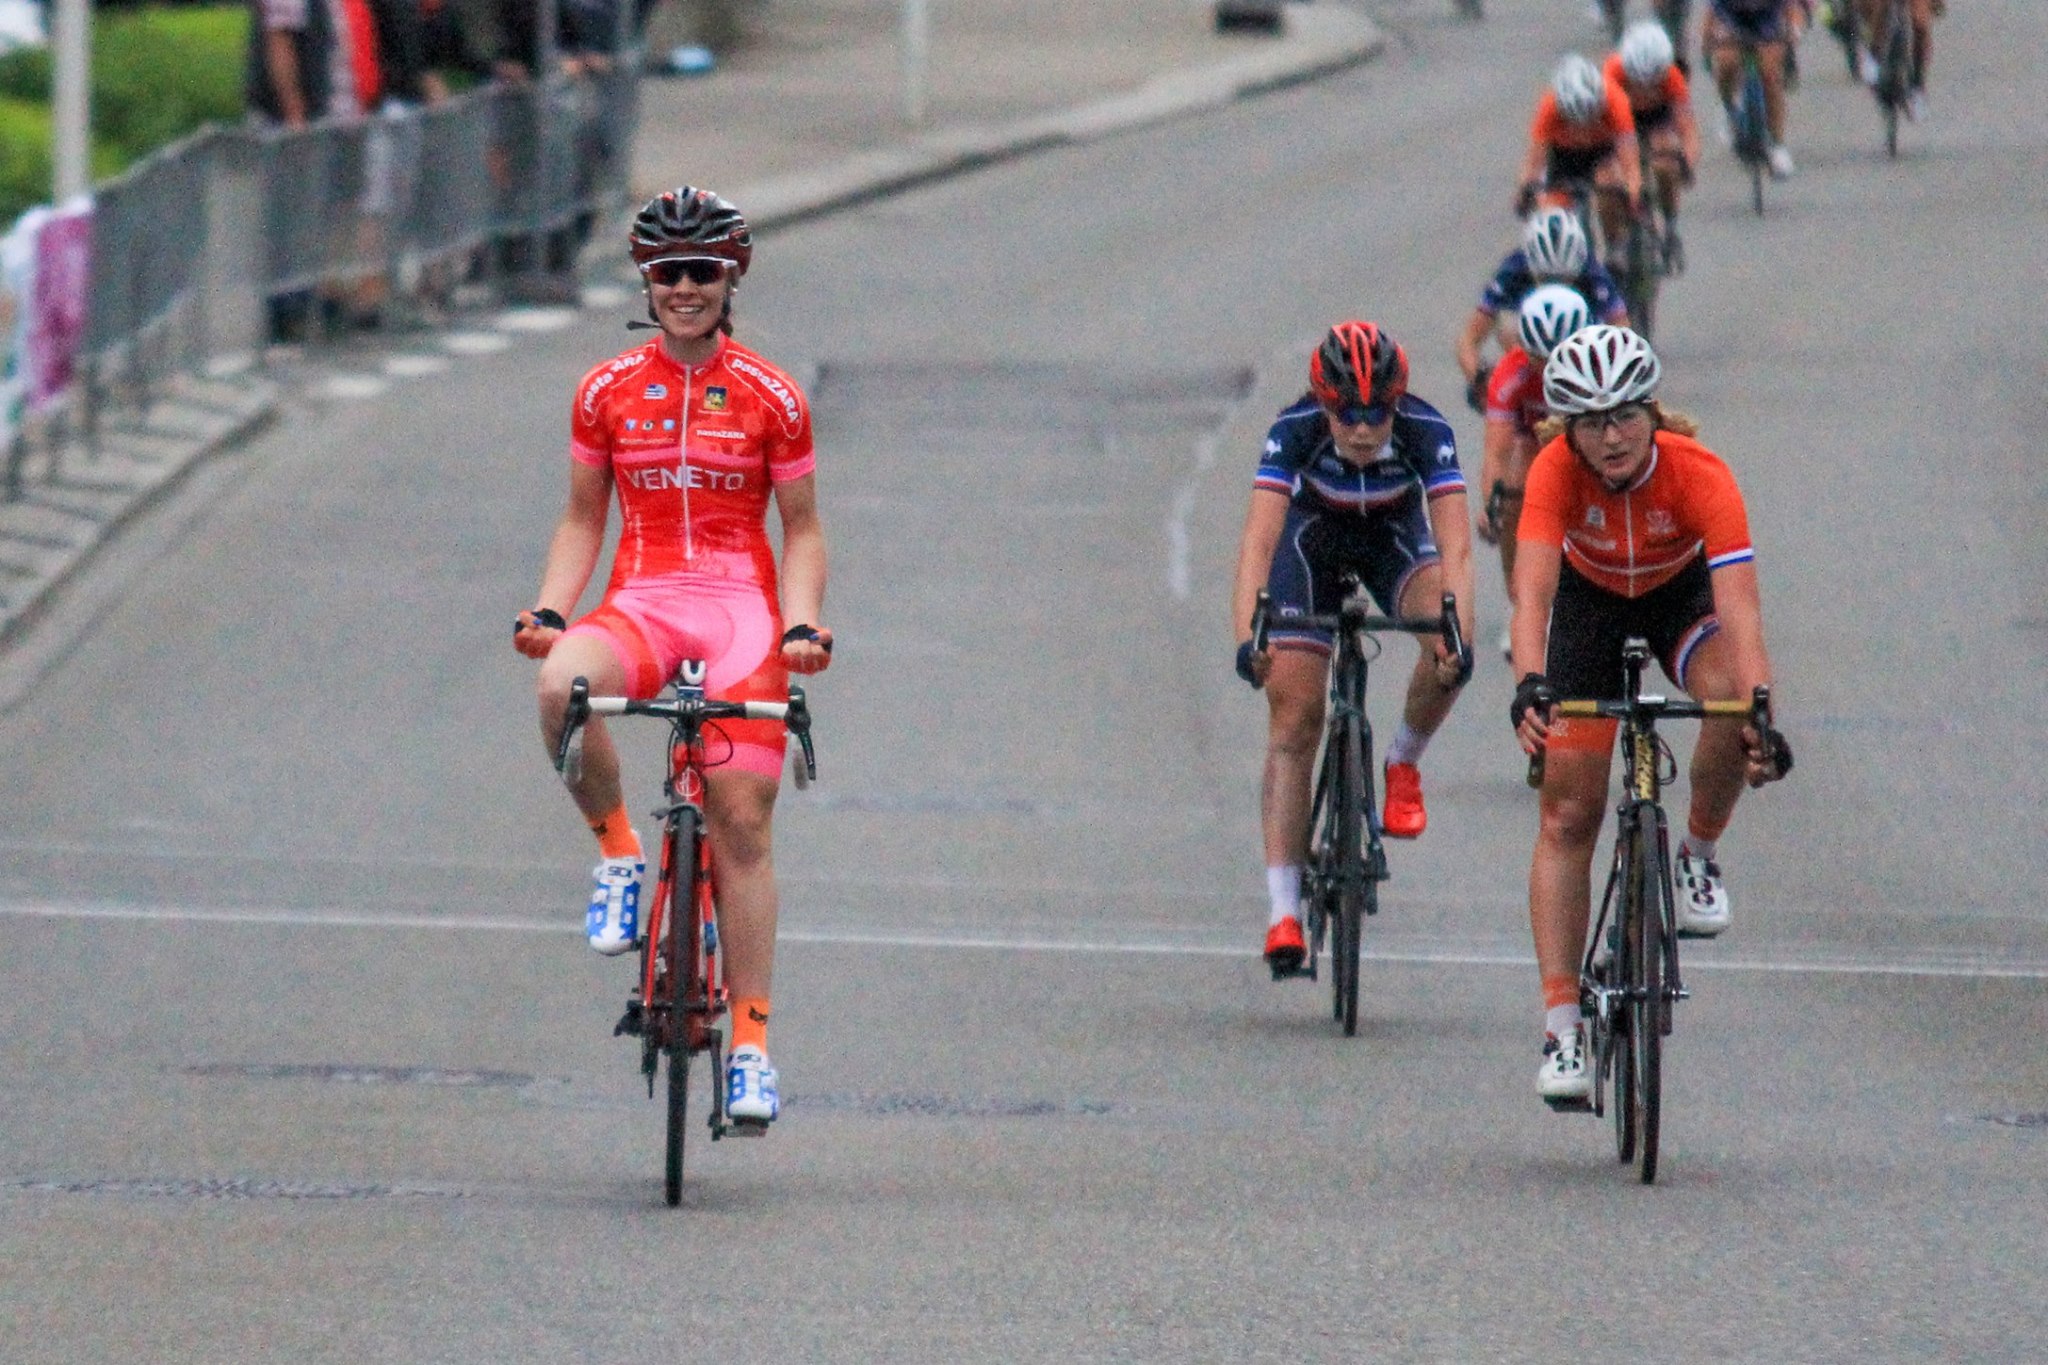 Paternoster ganando la primera etapa de la Albstadt-Frauen (Copa de las Naciones UCI). En ruta este año también fue tercera en el Trofeo da Moreno, cuarta en el Europeo y quinta en el Mundial. (Foto © Nicola Veleda)